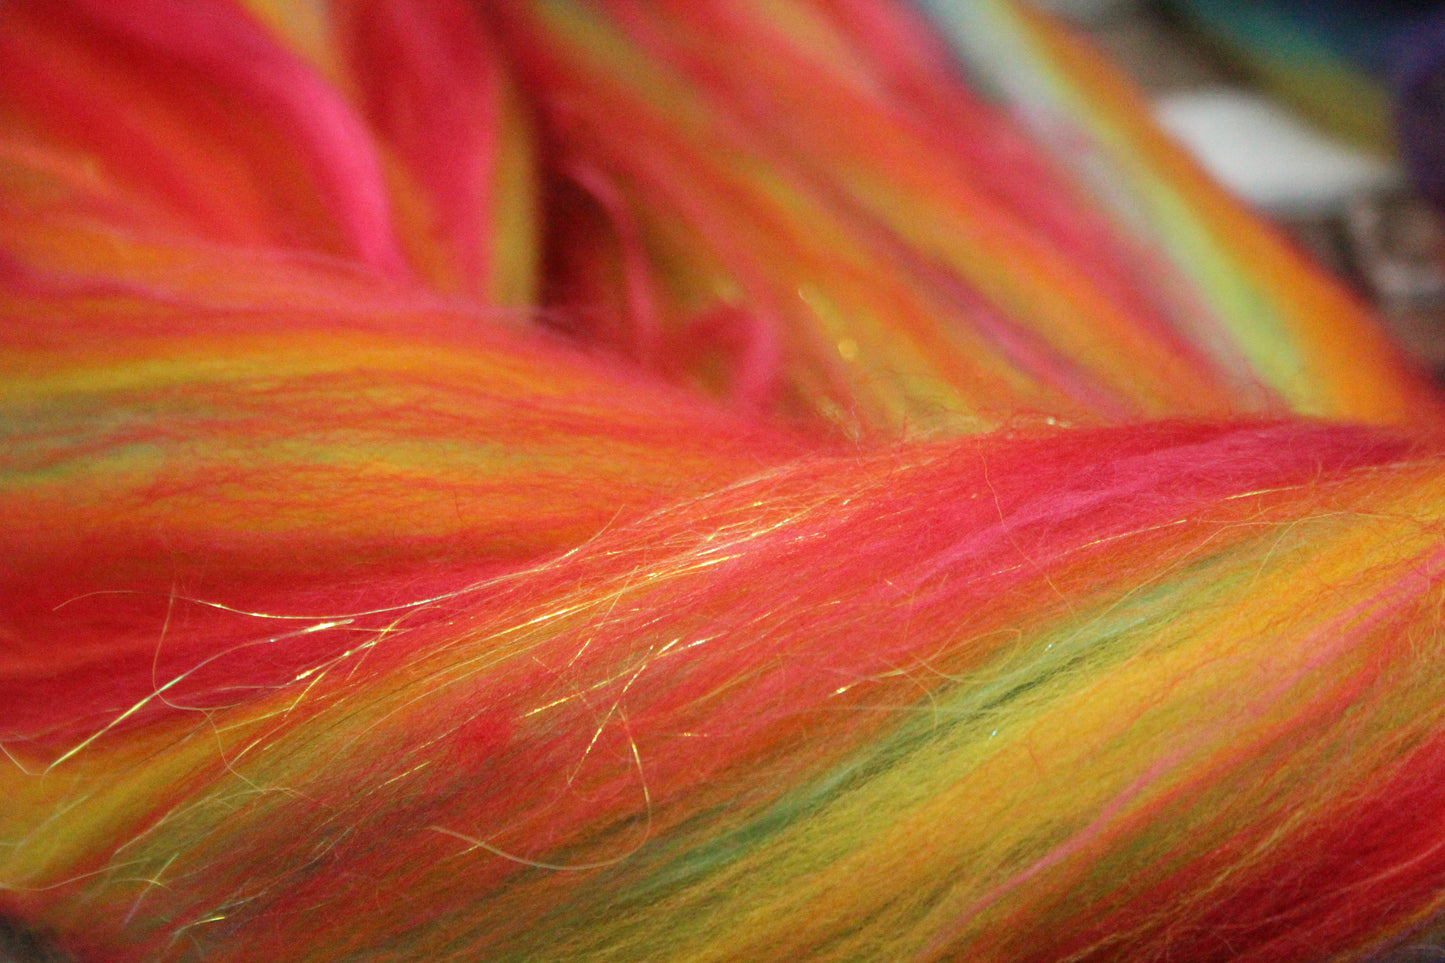 Merino Wool Blend - Rainbow - 26 grams / 0.9 oz  - Fibre for felting, weaving or spinning